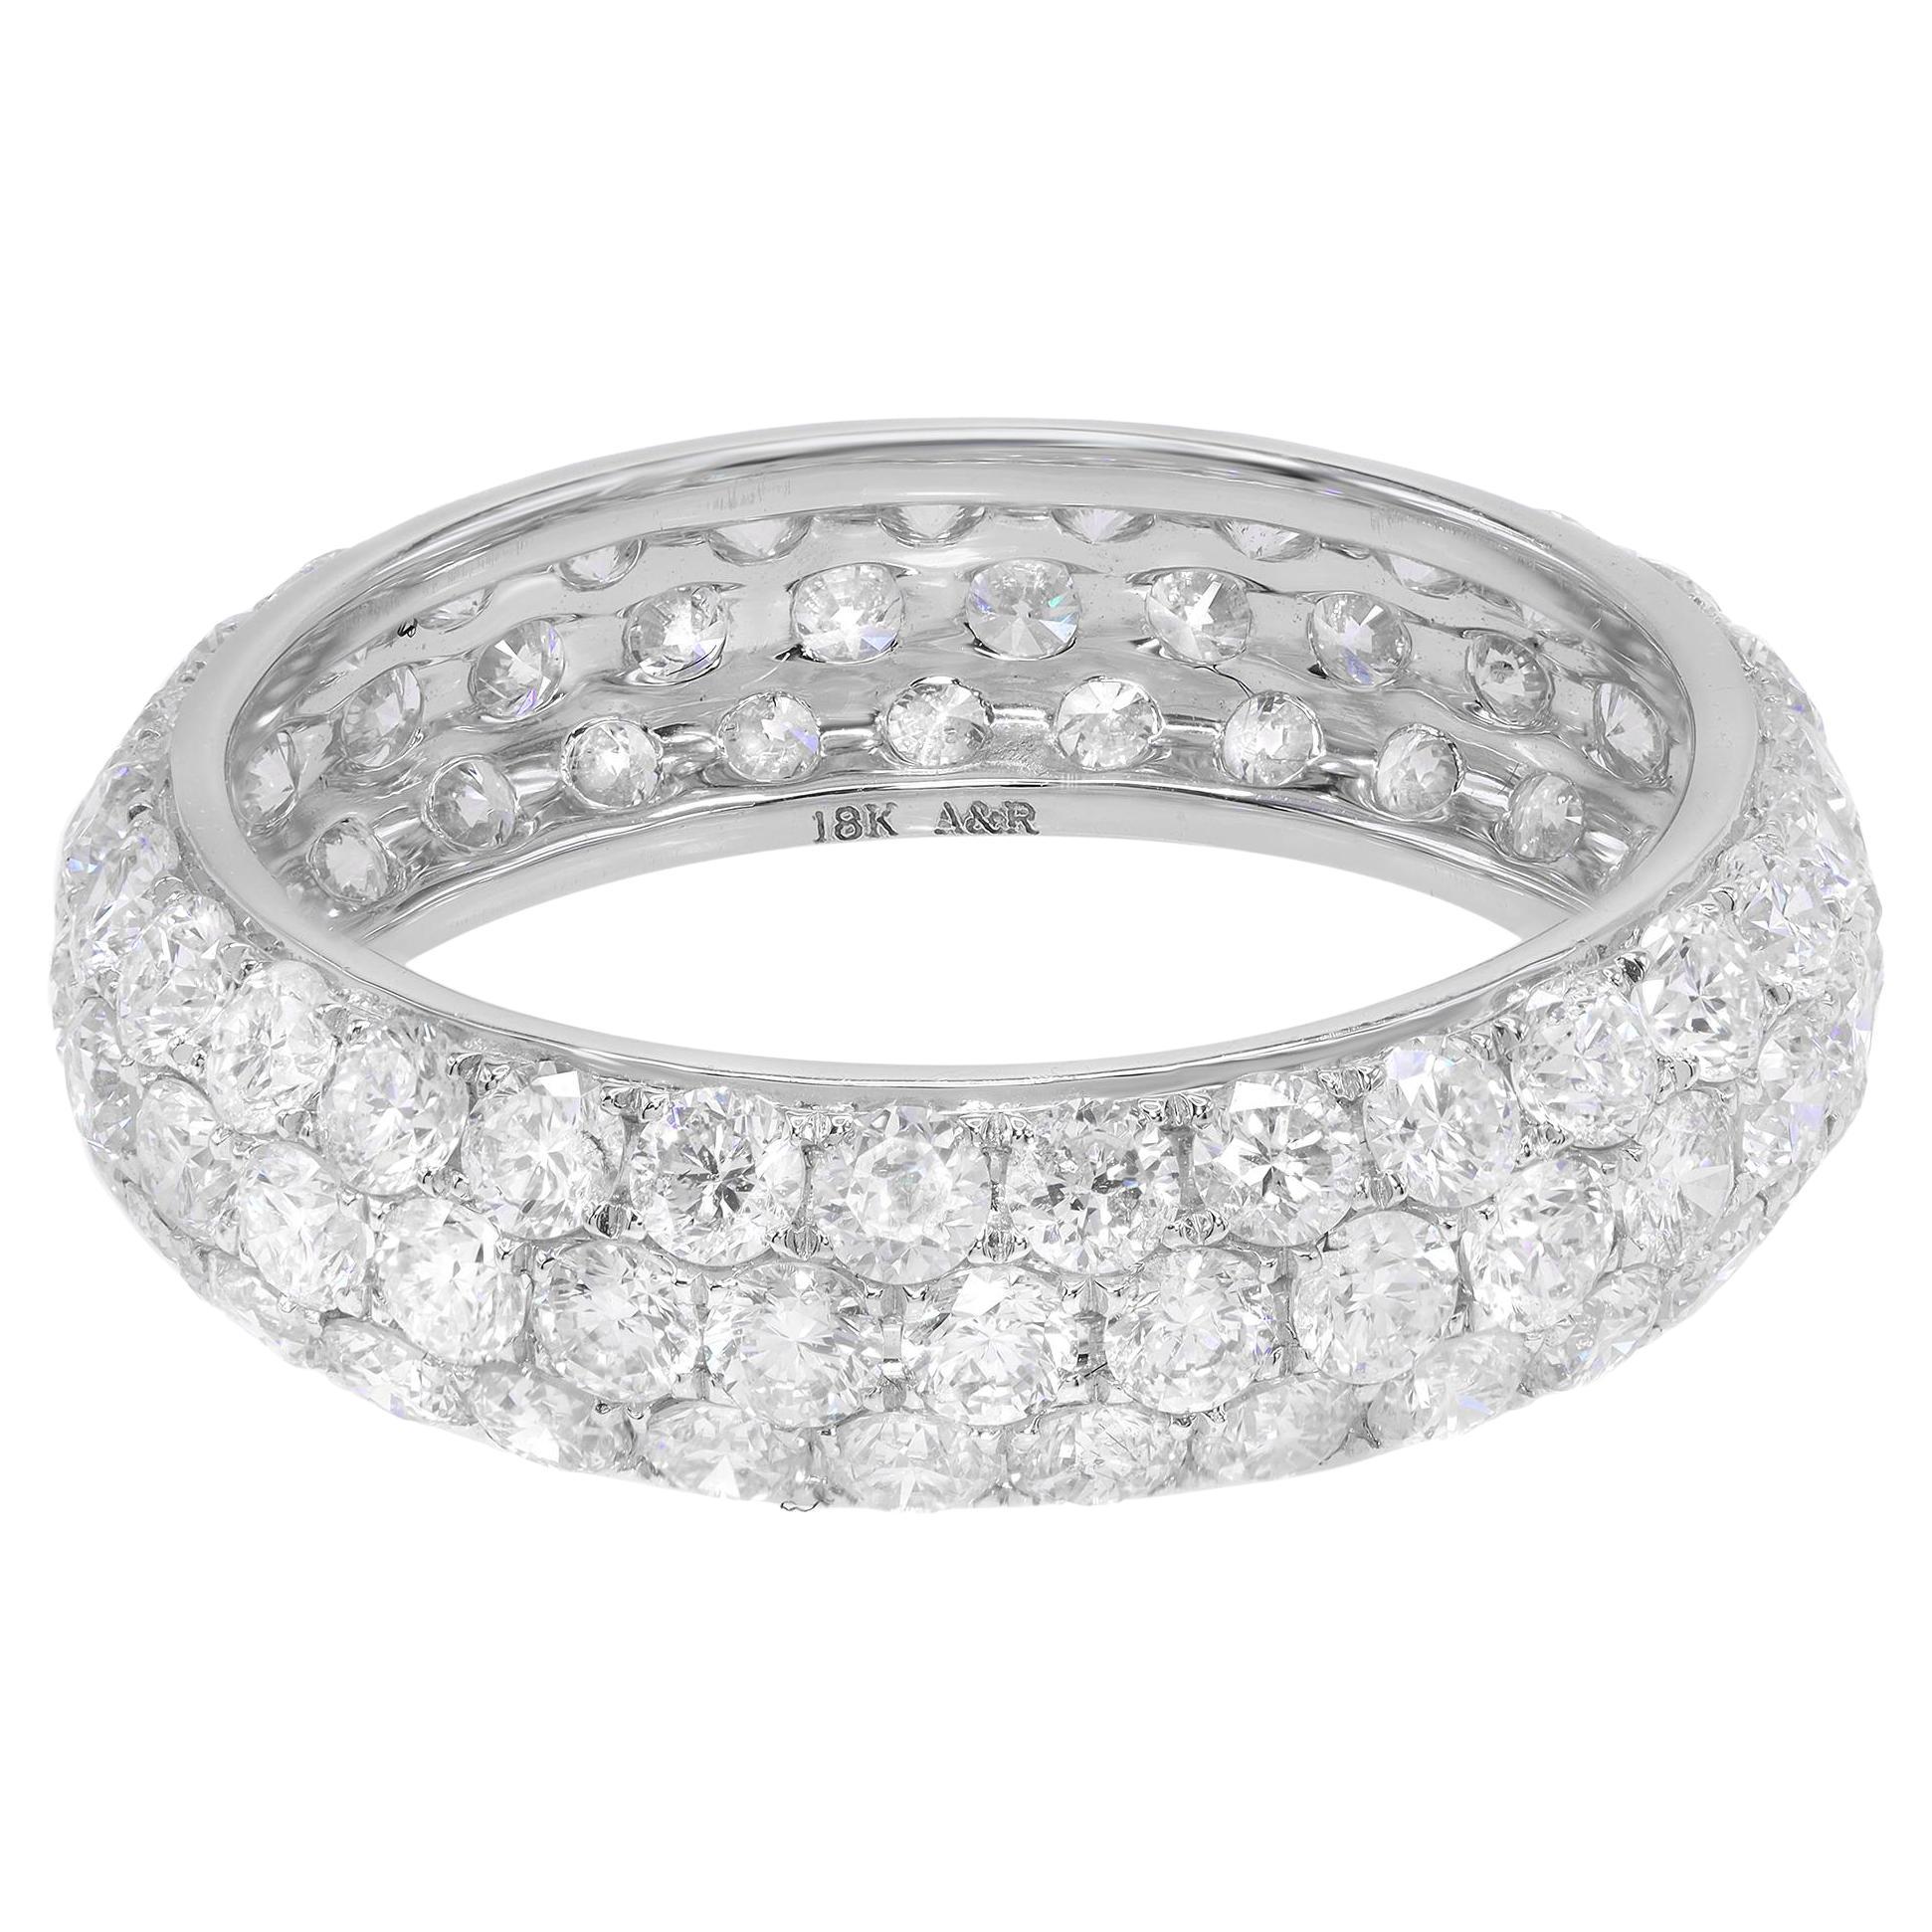 Rachel Koen 18k White Gold Pave Diamond Wedding Band Ring 0.65 cttw For ...